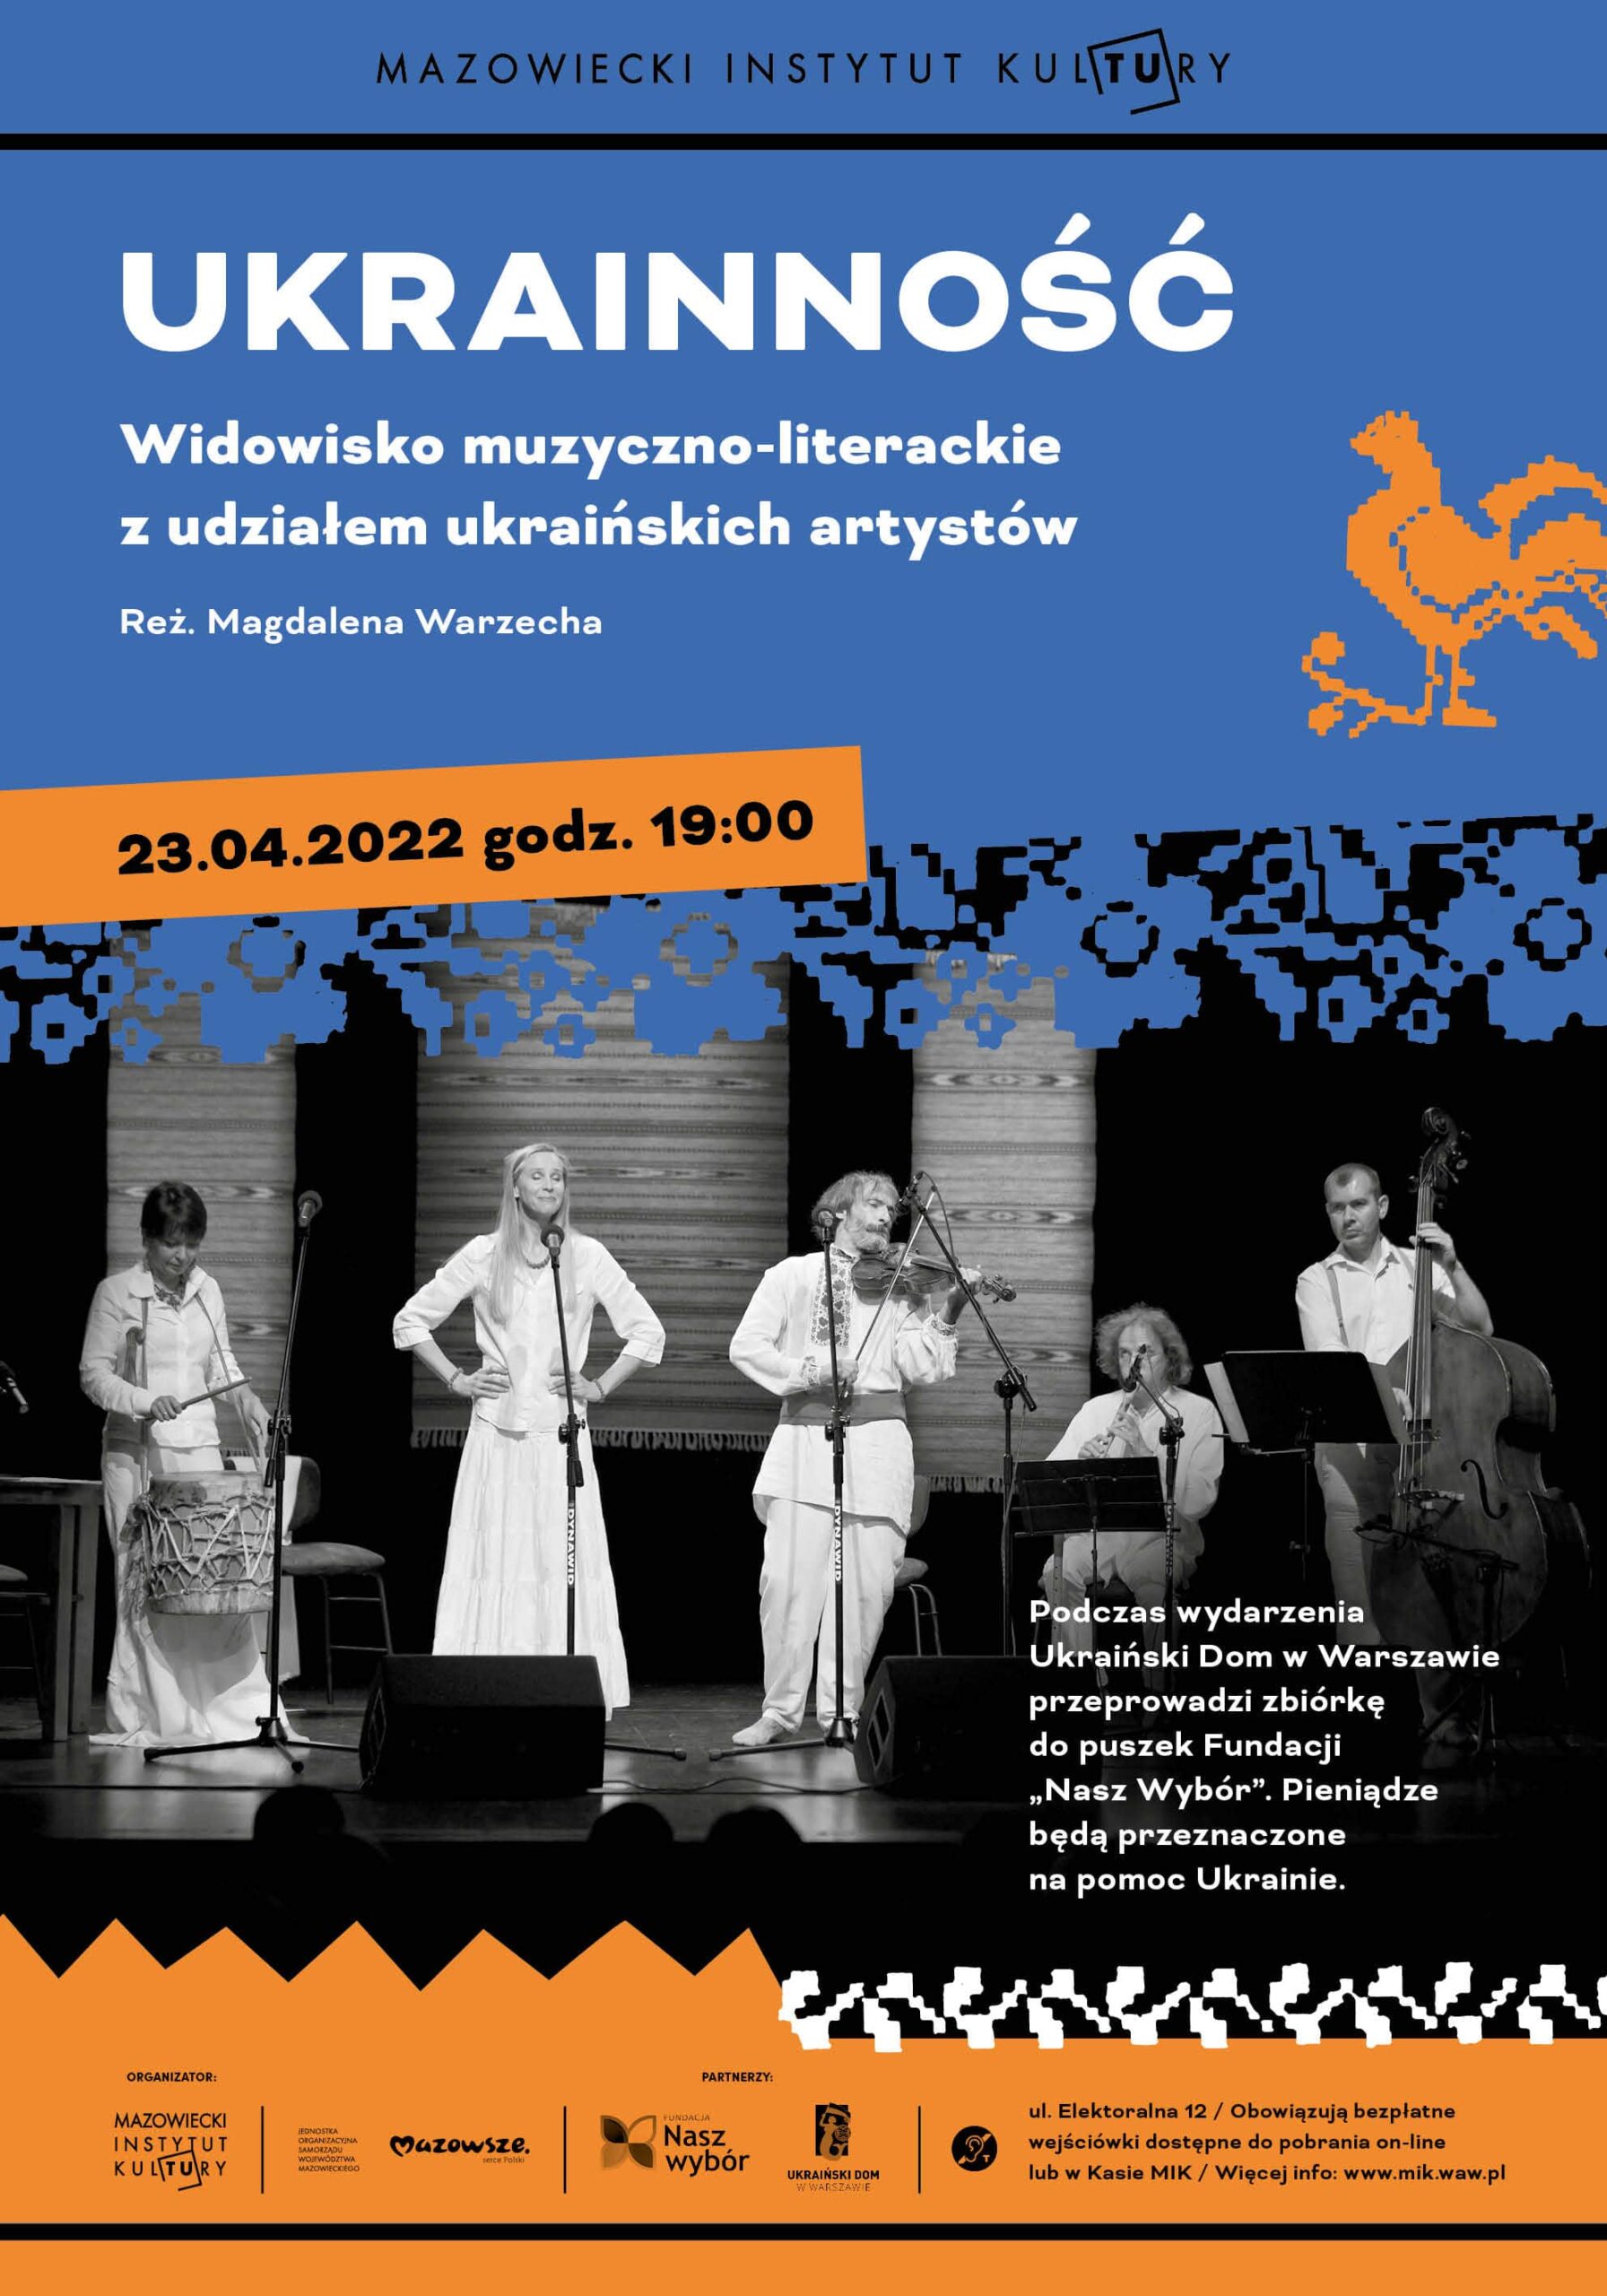 fotografia czarno biała: pięcioro muzyków i wokalistów na scenie, z instrumentami, ubrani w stroje w stylistyce ludowej